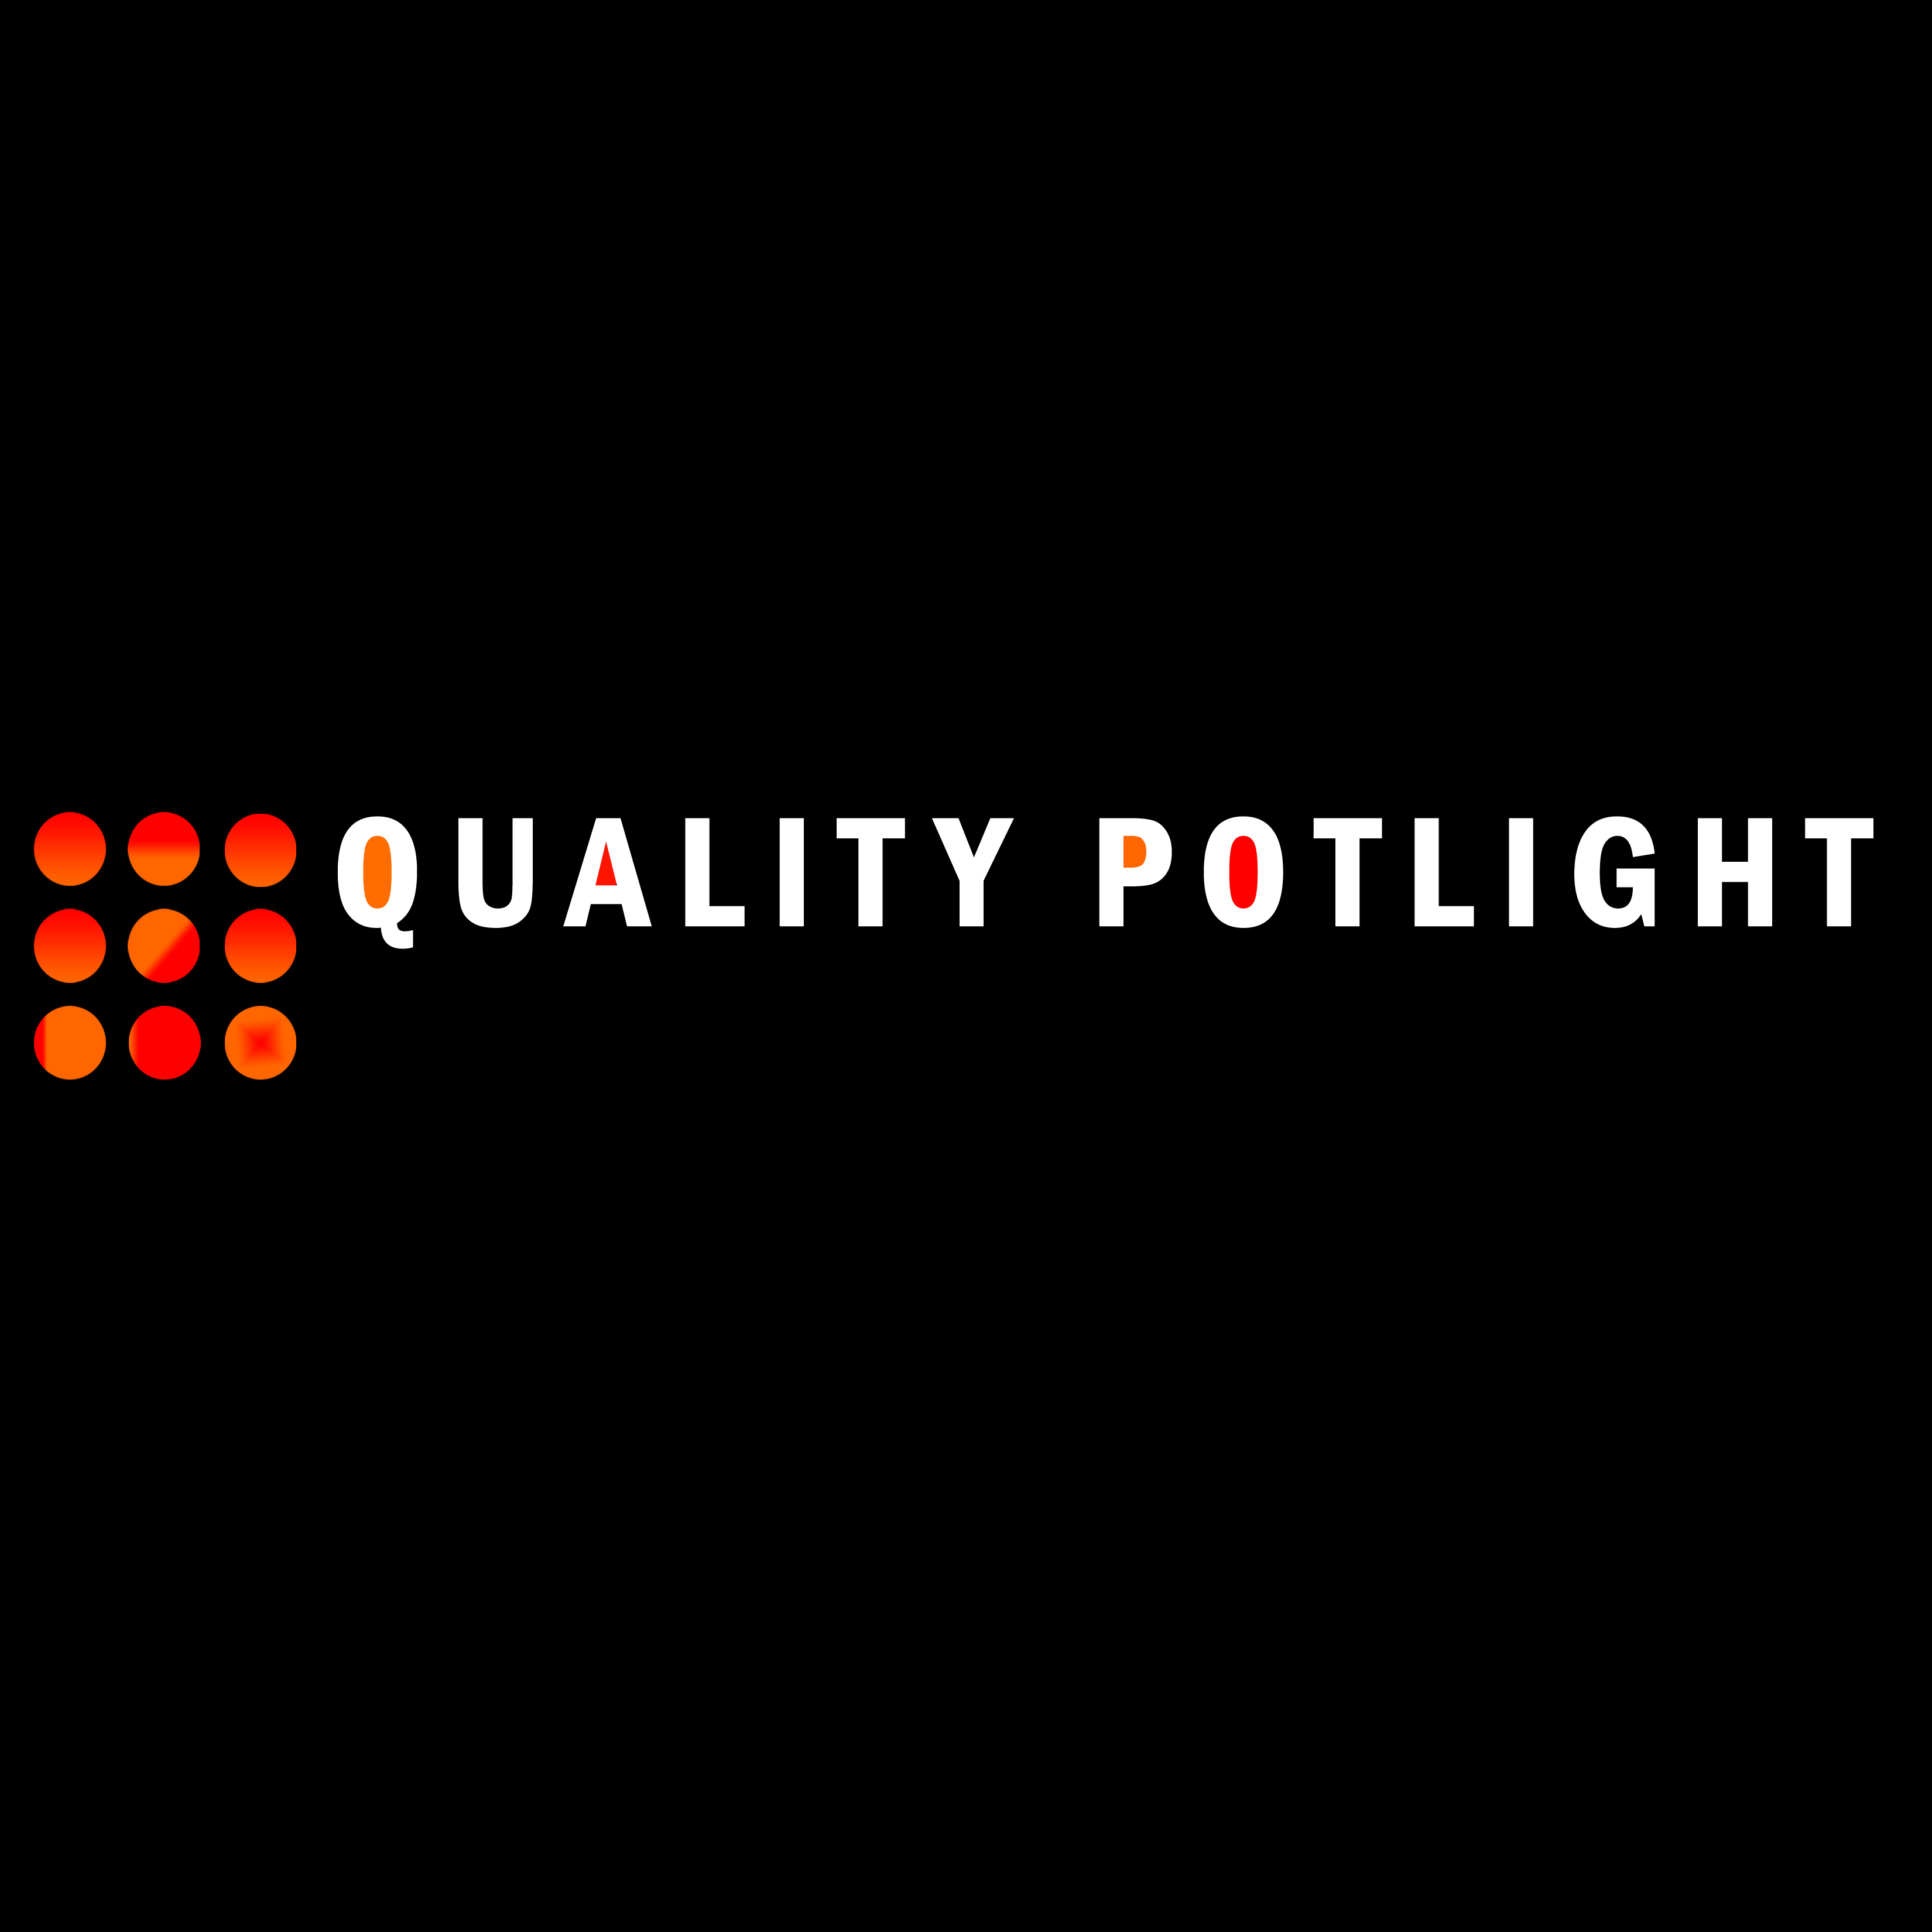 Quality Potlight Inc.'s logo